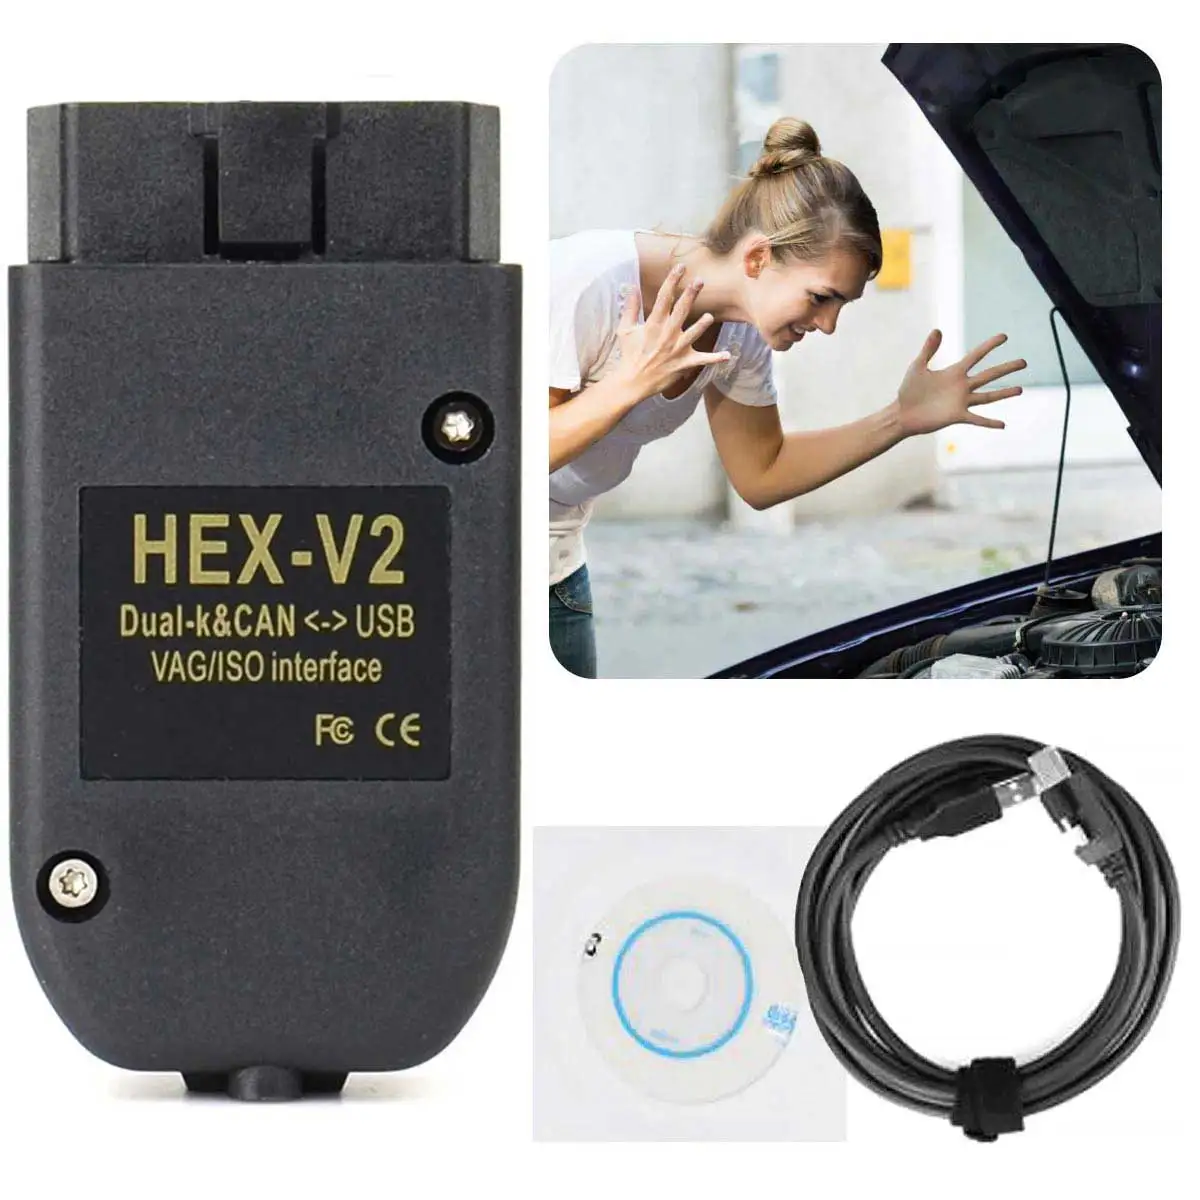 Interface de diagnostic HEX CAN compatible avec VCDS (VAG COM) 18.9  français/anglais 2018